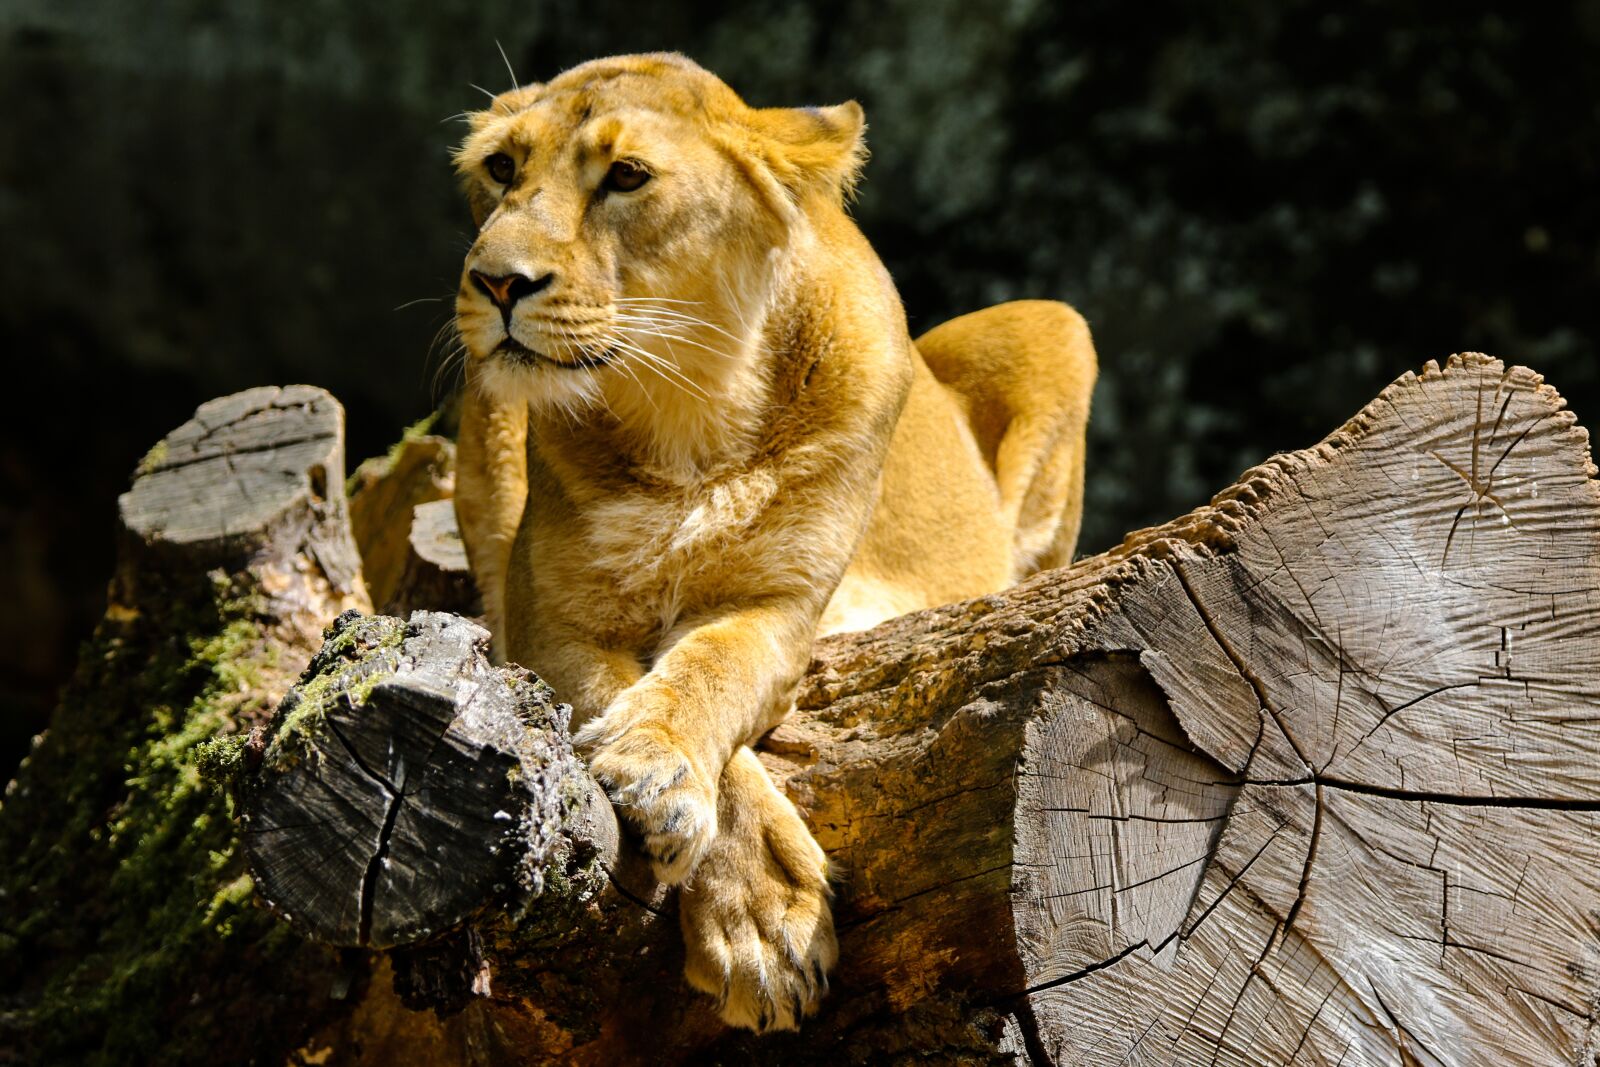 Canon EOS 70D sample photo. Animal, predator, lion photography